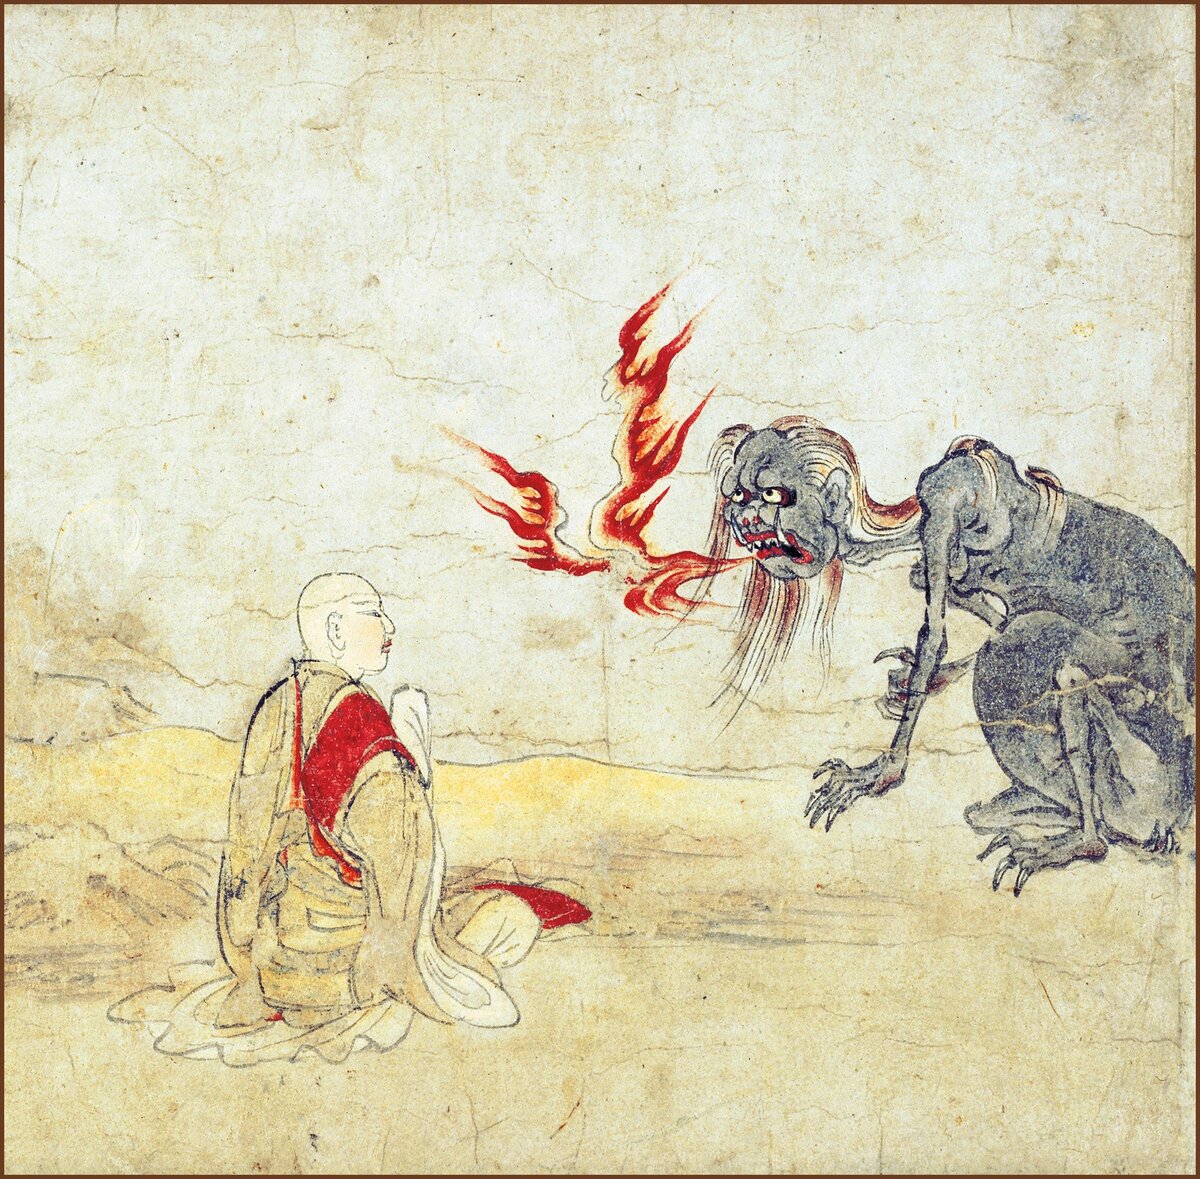 Japán: A kép a Kiotói Szellemek tekercséből származik, amely leírja az éhes szellemek birodalmát és azt, hogyan lehet őket lecsillapítani. A 12. század vége.
Részlet a Kiotói Nemzeti Múzeumban található Éhes szellemek tekercs hatodik részéből. A tekercs az éhes szellemek világát, a buddhizmus hat birodalmának egyikét ábrázolja, és az éhes szellemek megmentéséről szóló történeteket tartalmaz. Ez a különleges rész azt mutatja be, amint Ananda, Shakyamuni tanítványa egy éhes szellemnek, aki folyamatosan lángokat okád a szájából, egy varázsigét tanít a megváltás elérésére. Az egész tekercset Japán nemzeti kincsének nyilvánították a festmények kategóriájában. Valószínűleg egy, a hat birodalmat ábrázoló tekercskészlet része lehetett, amelyet a Szandzs-szang-d_ban őriztek. (Fotó: Pictures From History/Universal Images Group via Getty Images)